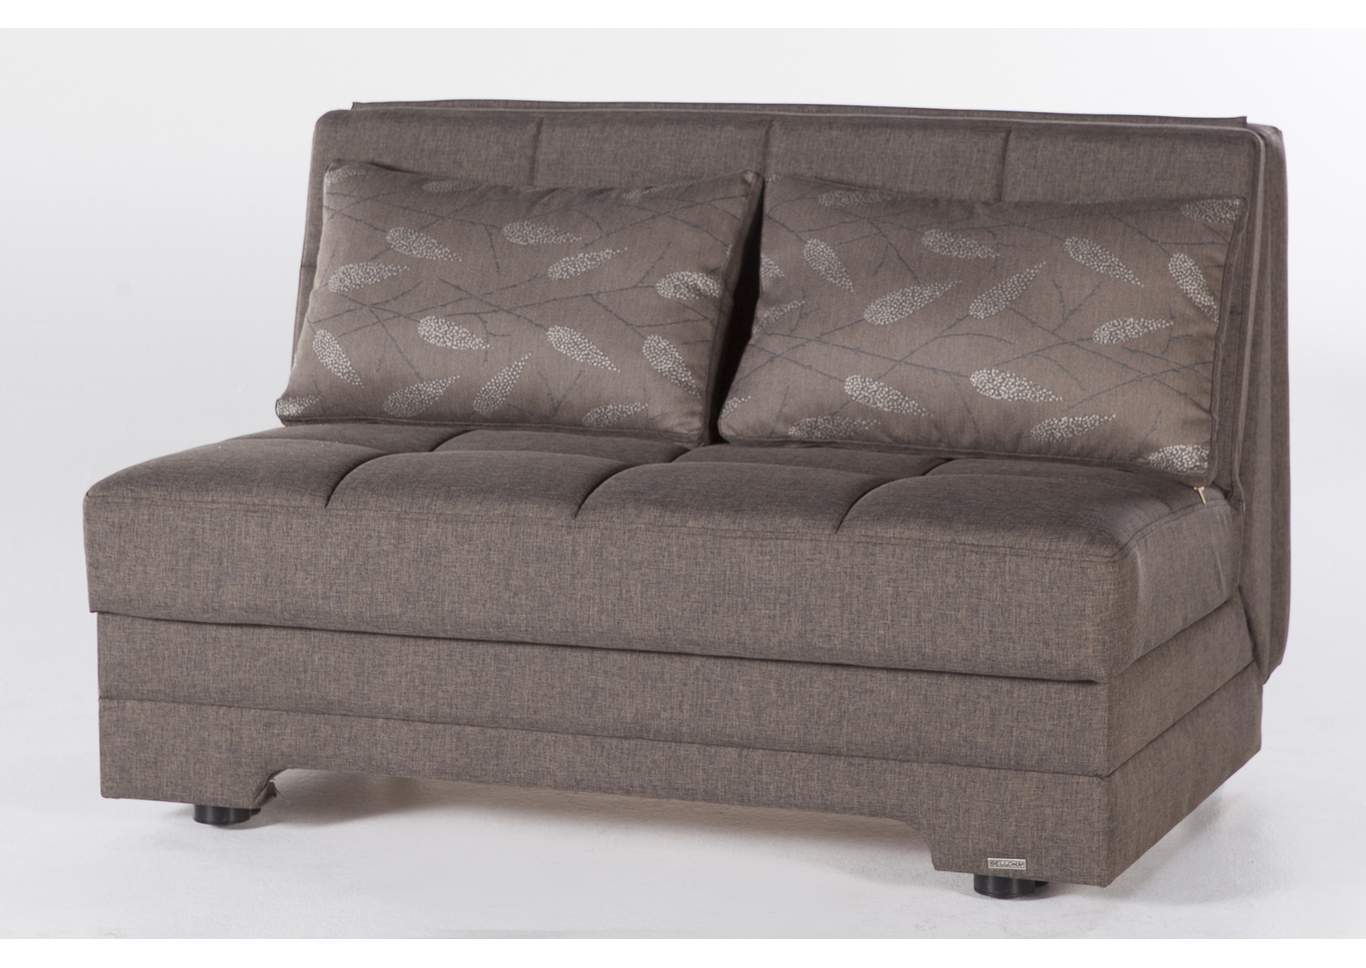 Twist Astoral Light Brown Love Seat W/ Storage,Hudson Furniture & Bedding